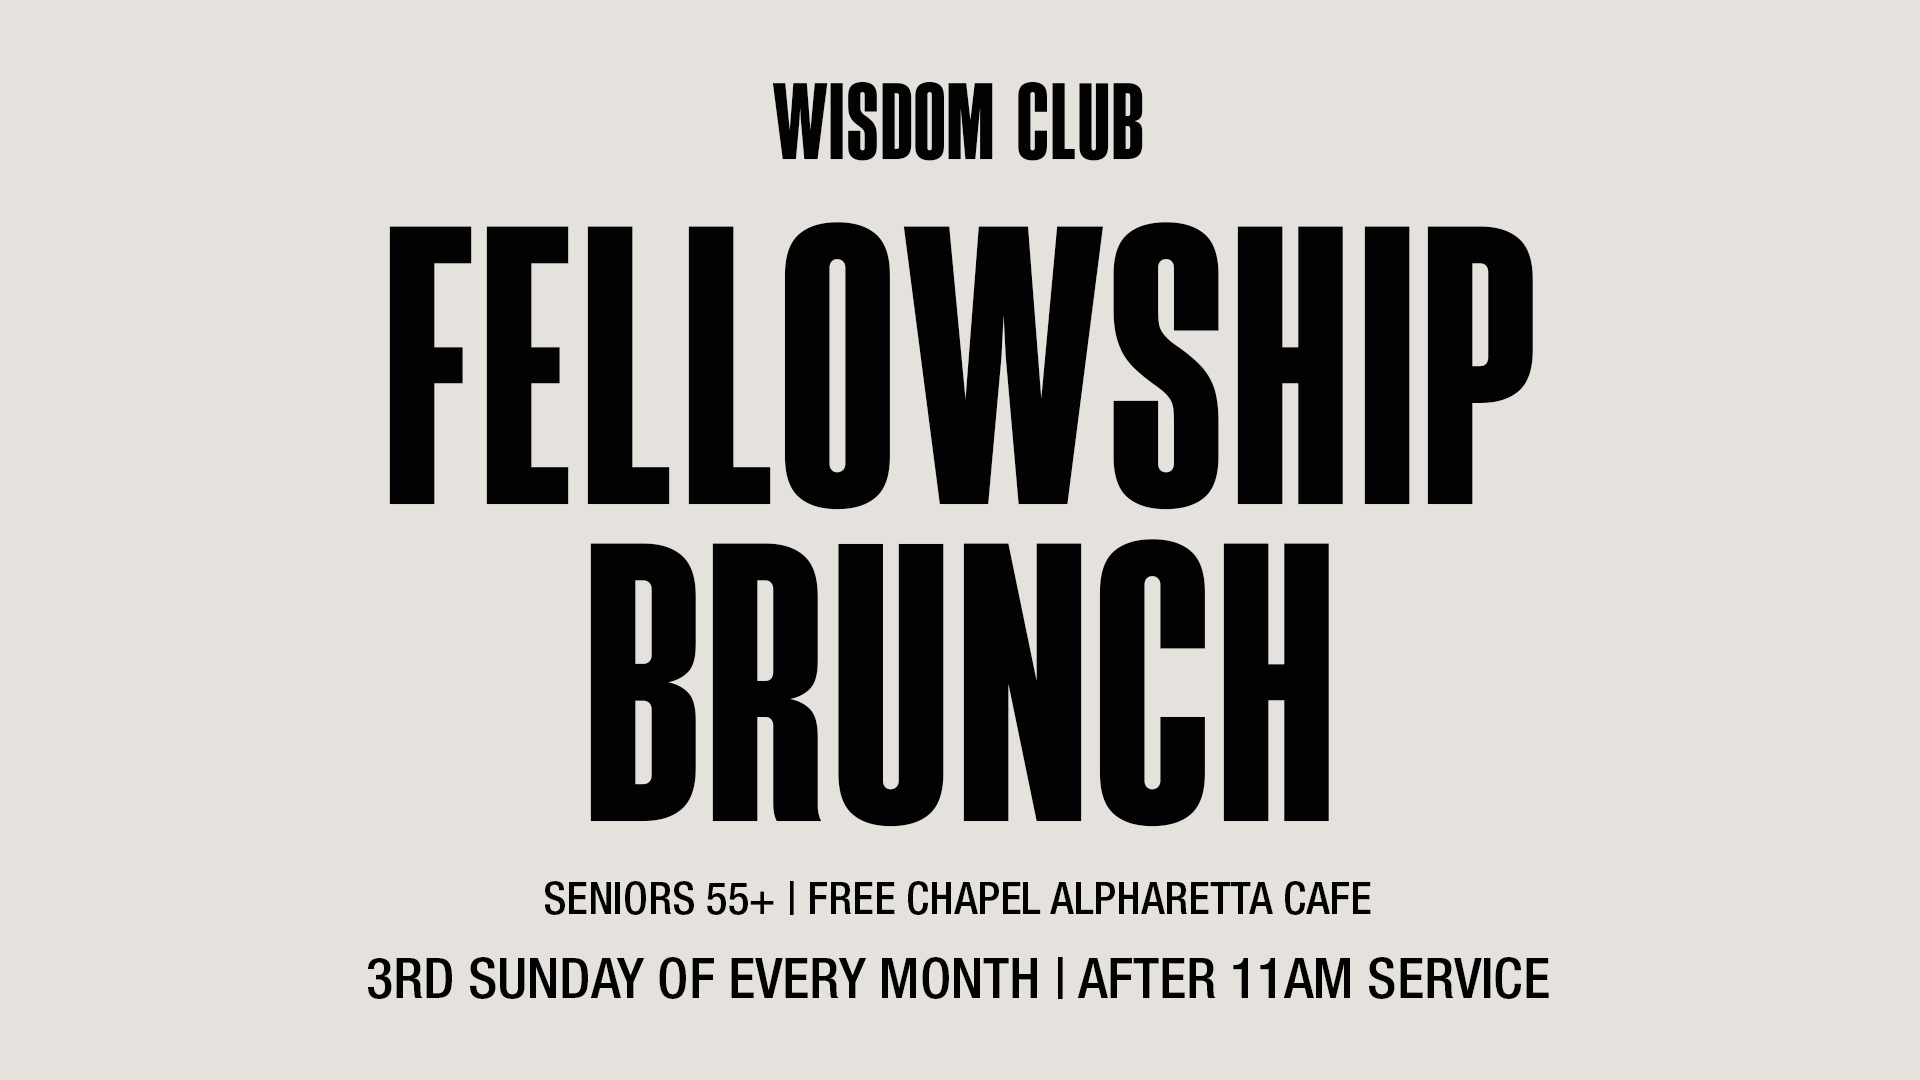 Wisdom Club Fellowship Brunch at the Alpharetta campus